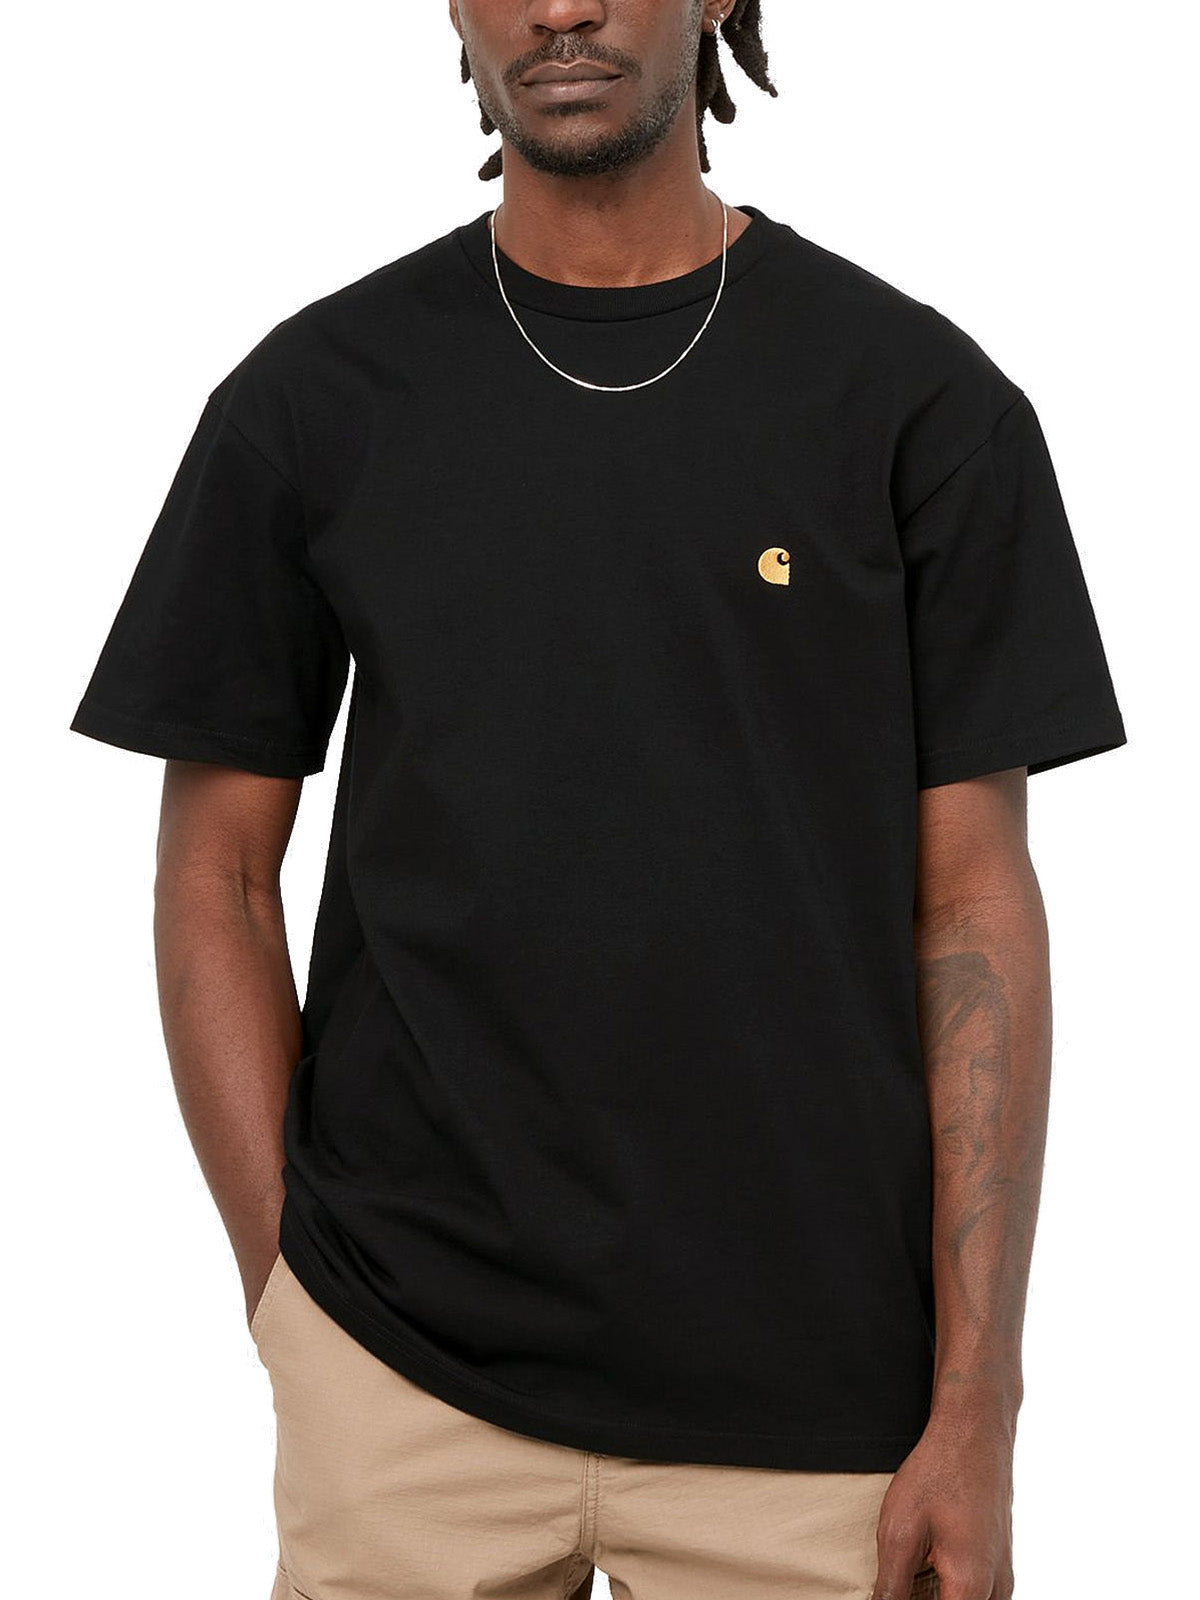 T-shirt Uomo Carhartt Wip - S/S Chase T-Shirt - Nero